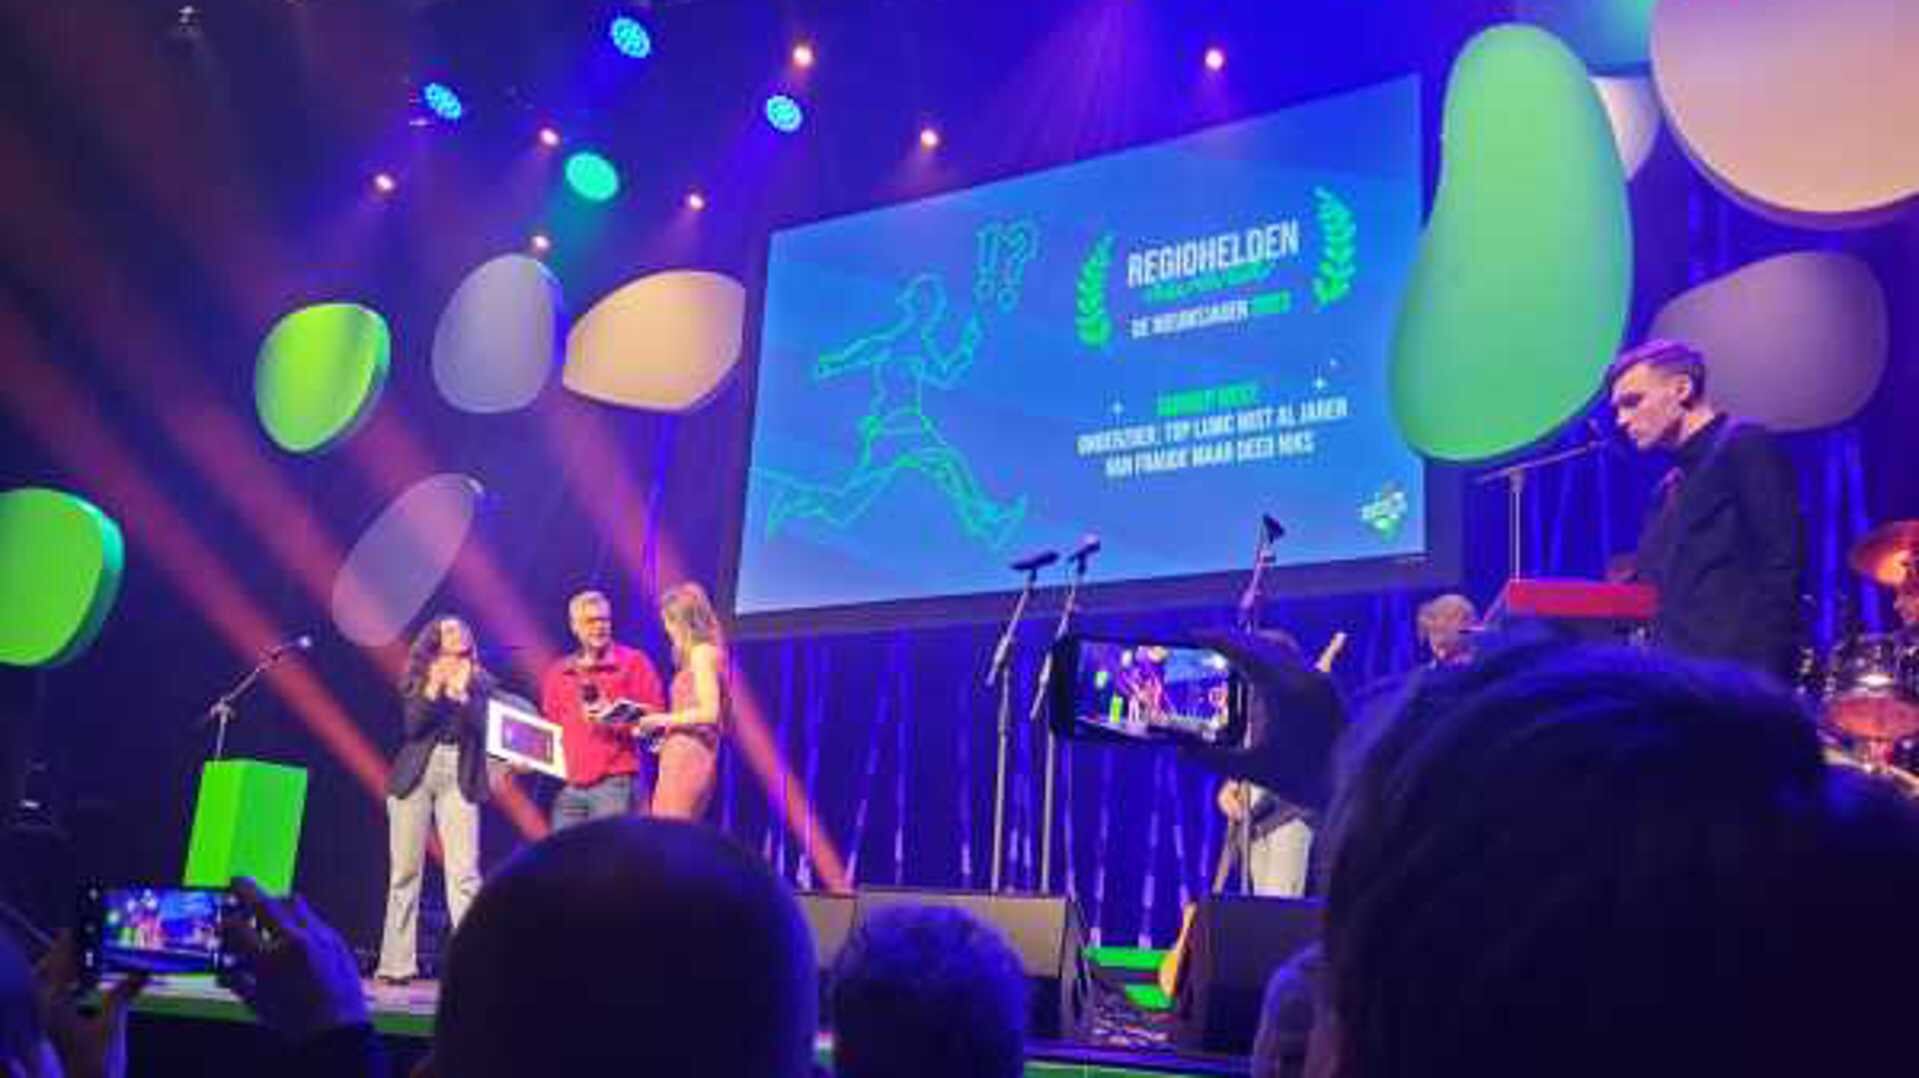 Het Regiohelden! Festival, gehouden dit jaar in Friesland, is een jaarlijks evenement georganiseerd door de dertien regionale publieke omroepen.